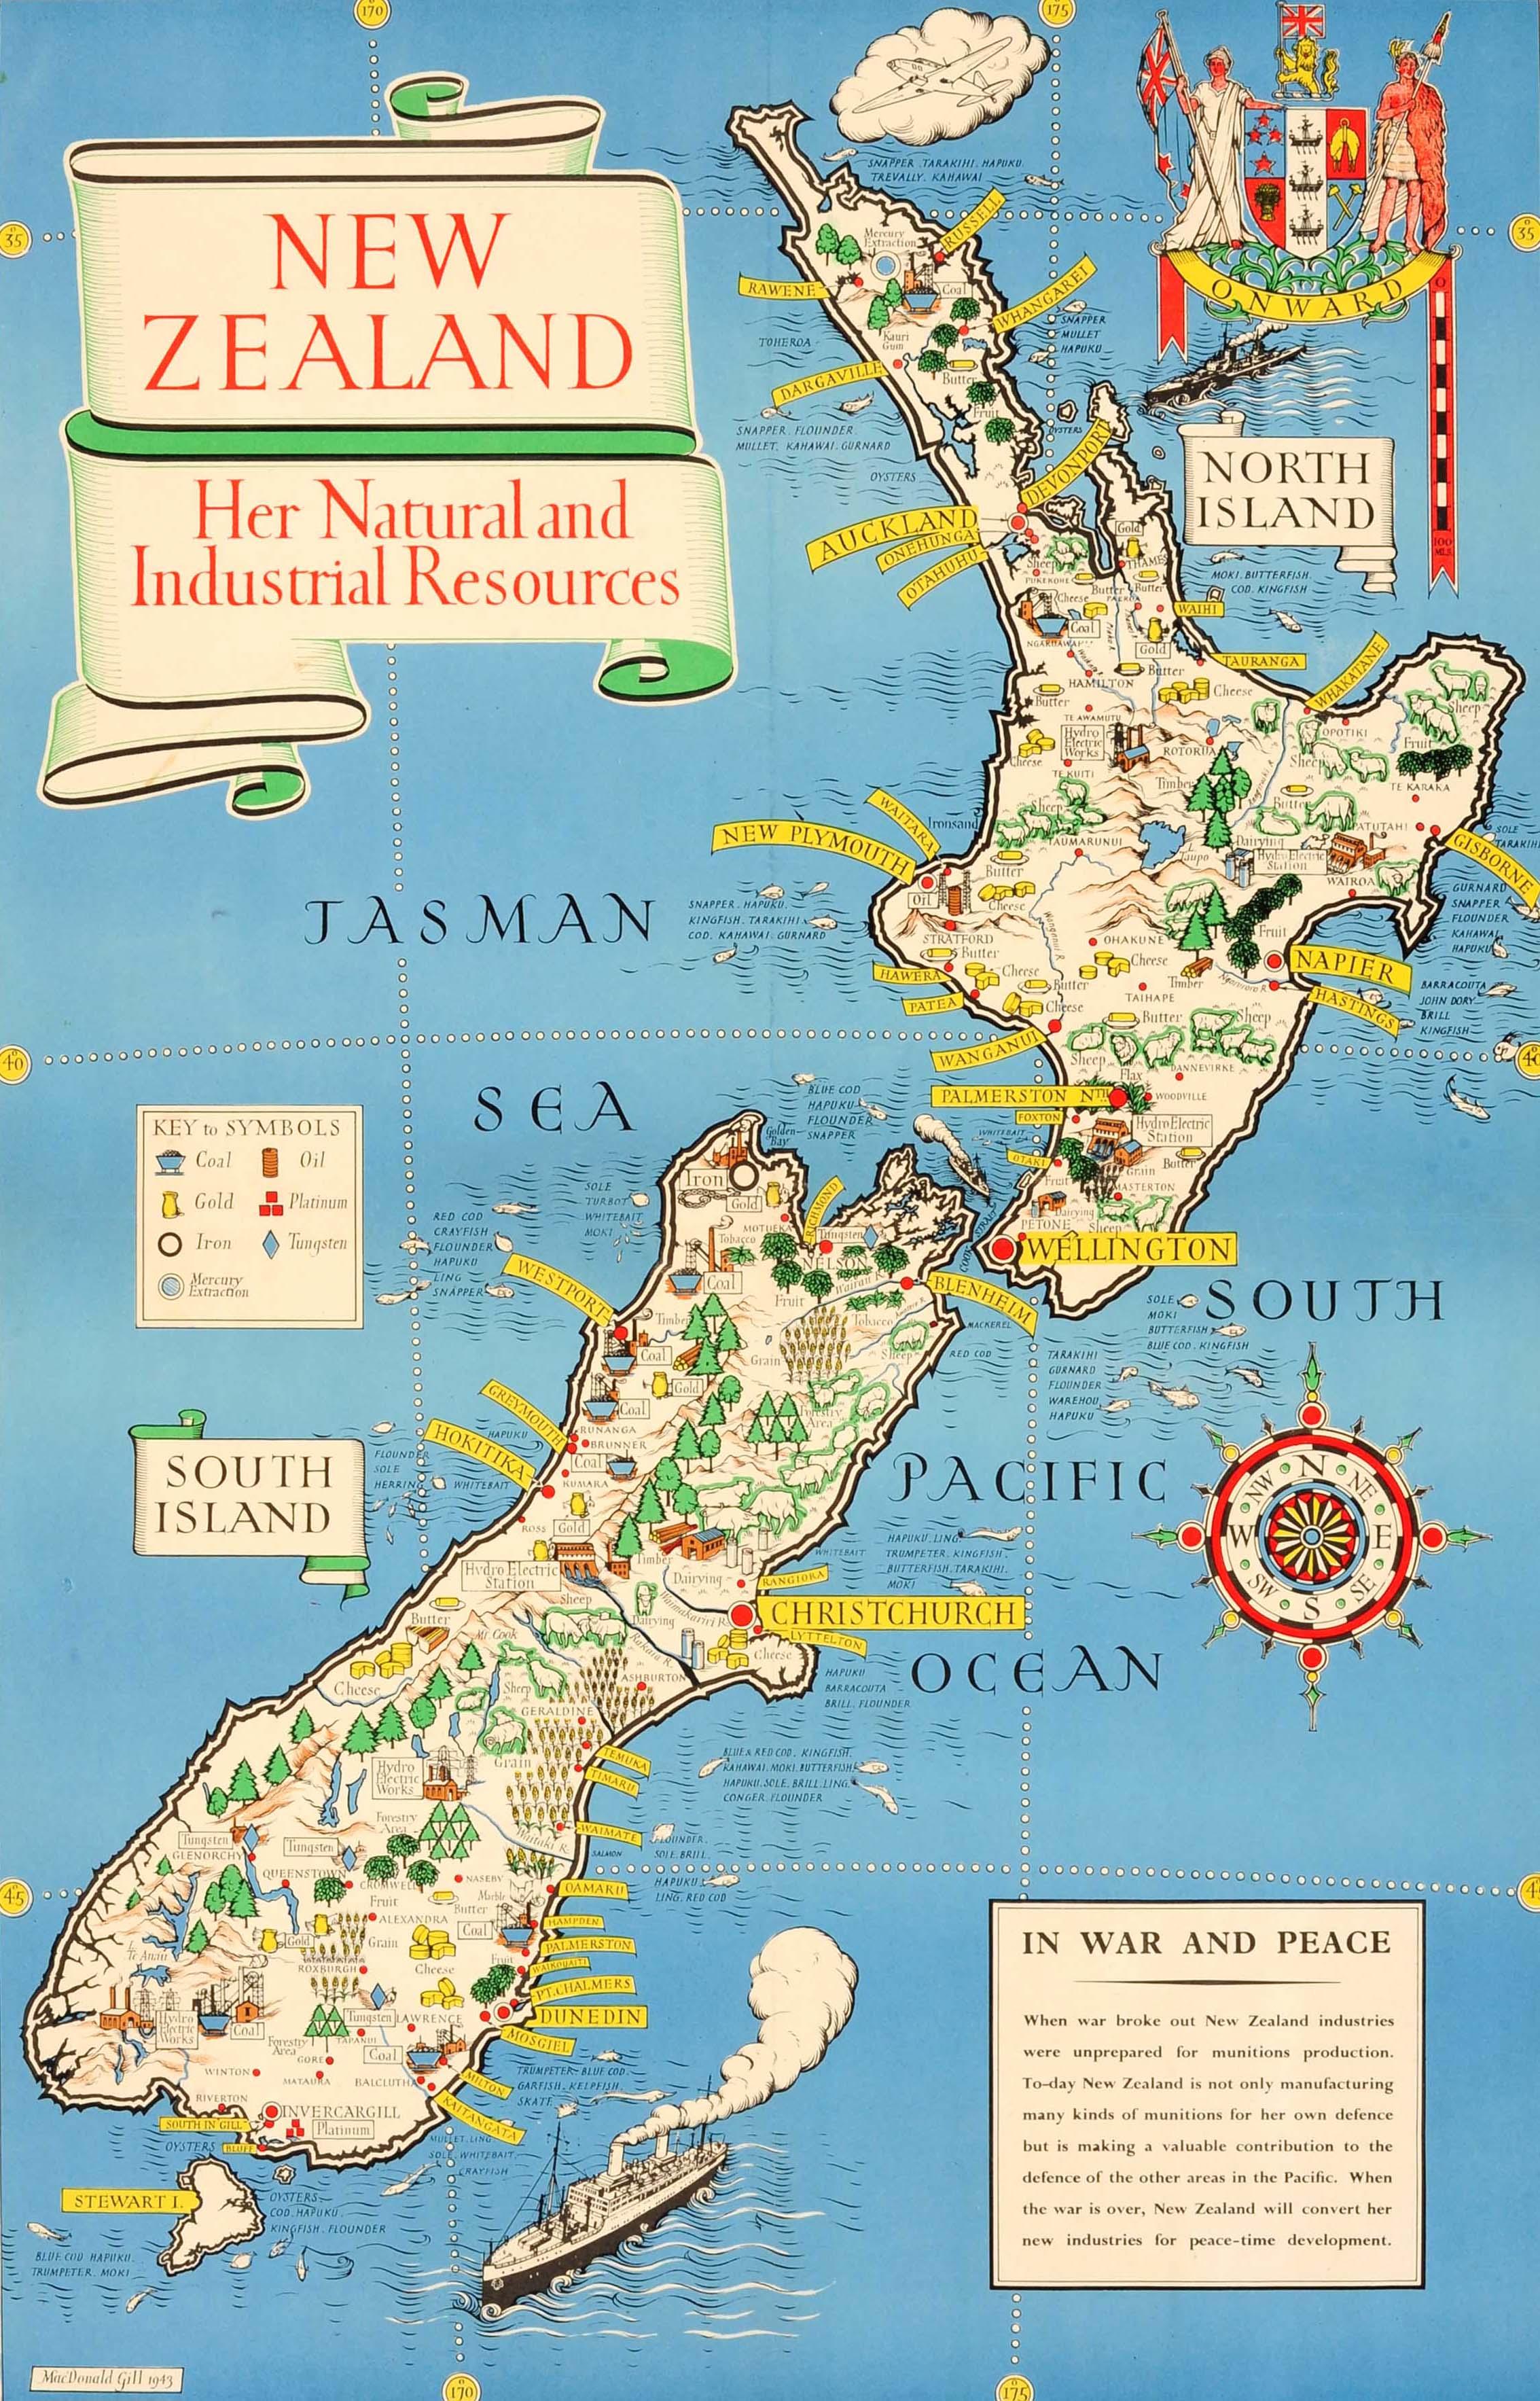 Carte picturale originale de la Nouvelle-Zélande, datant de la Seconde Guerre mondiale et représentant ses ressources naturelles et industrielles. Elle comporte une superbe illustration du célèbre graphiste, cartographe et artiste MacDonald Gill